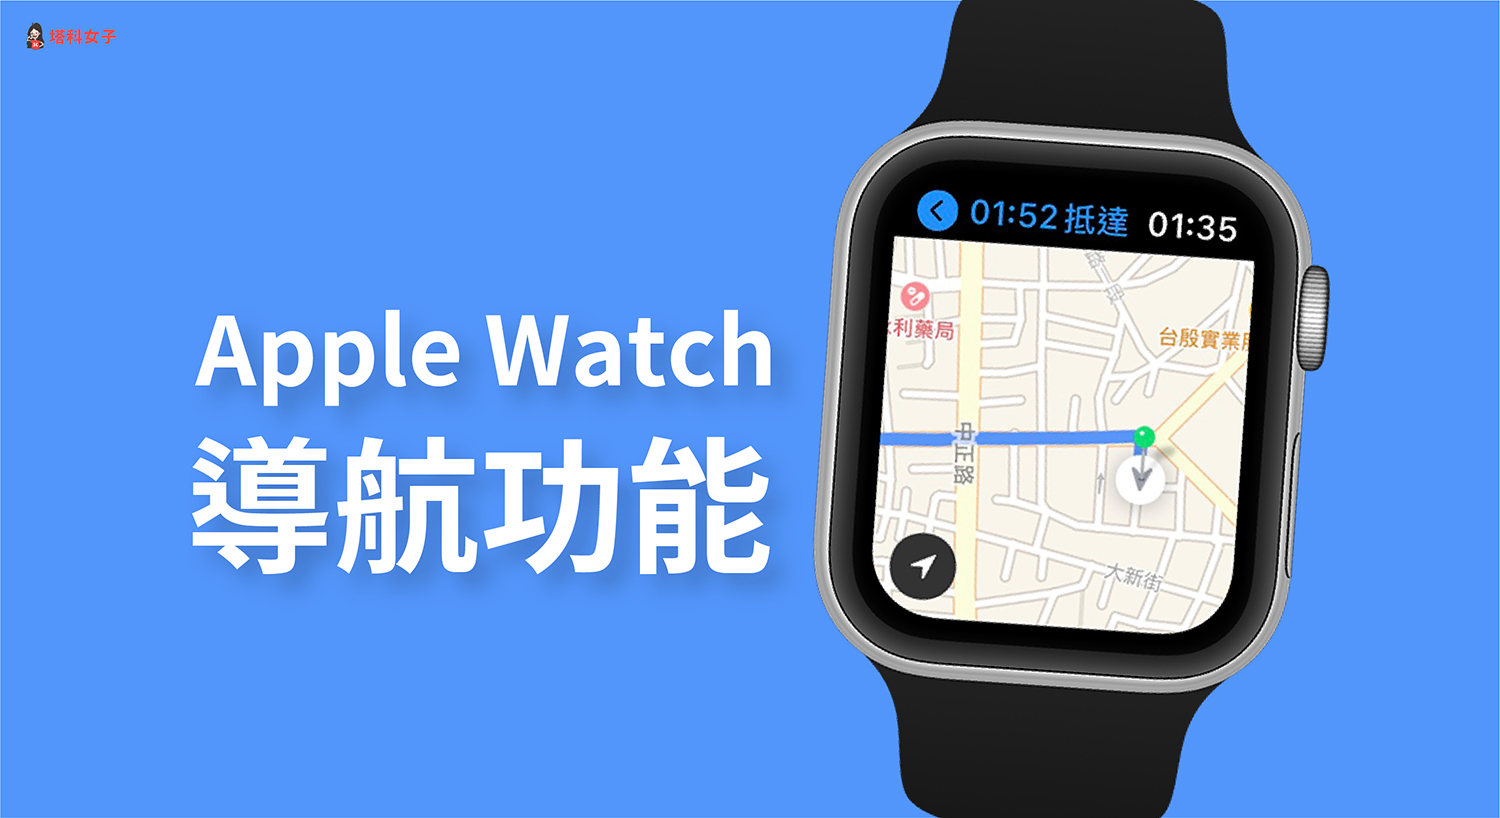 Apple Watch 導航怎麼用？教你用地圖 App 及 Google Maps